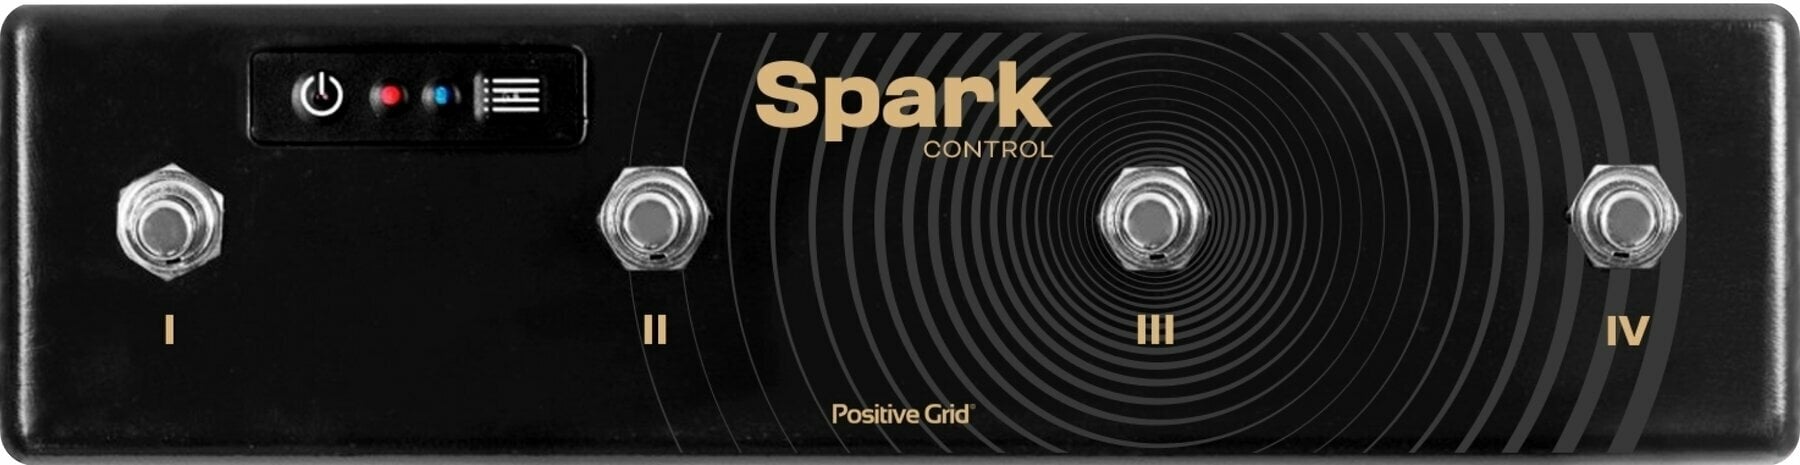 Przełącznik nożny Positive Grid Spark Control Przełącznik nożny